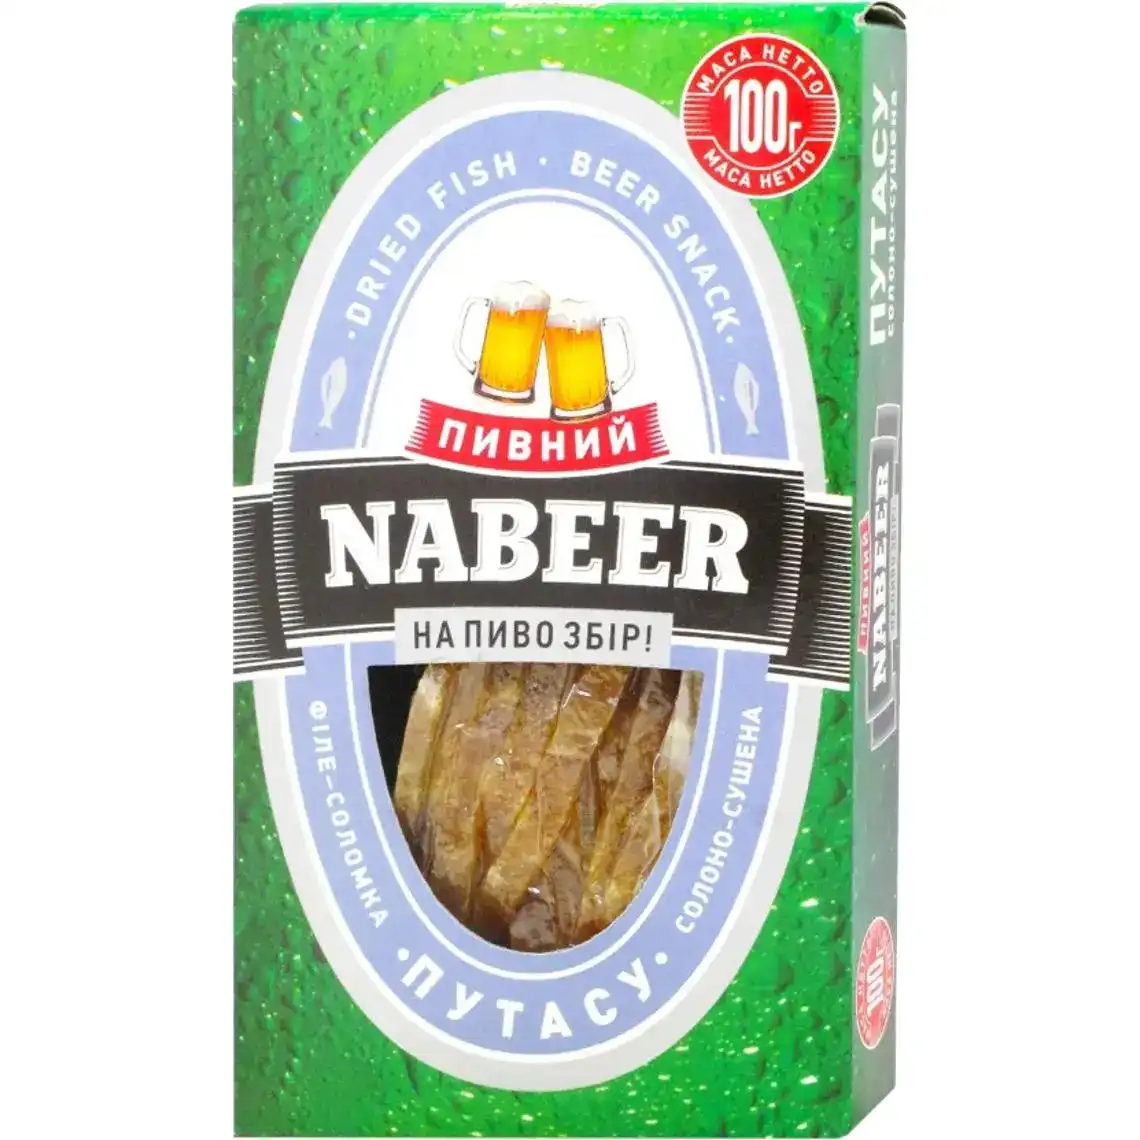 Путаса Пивний Nabeer филе-соломка соленая сушеная 100 г